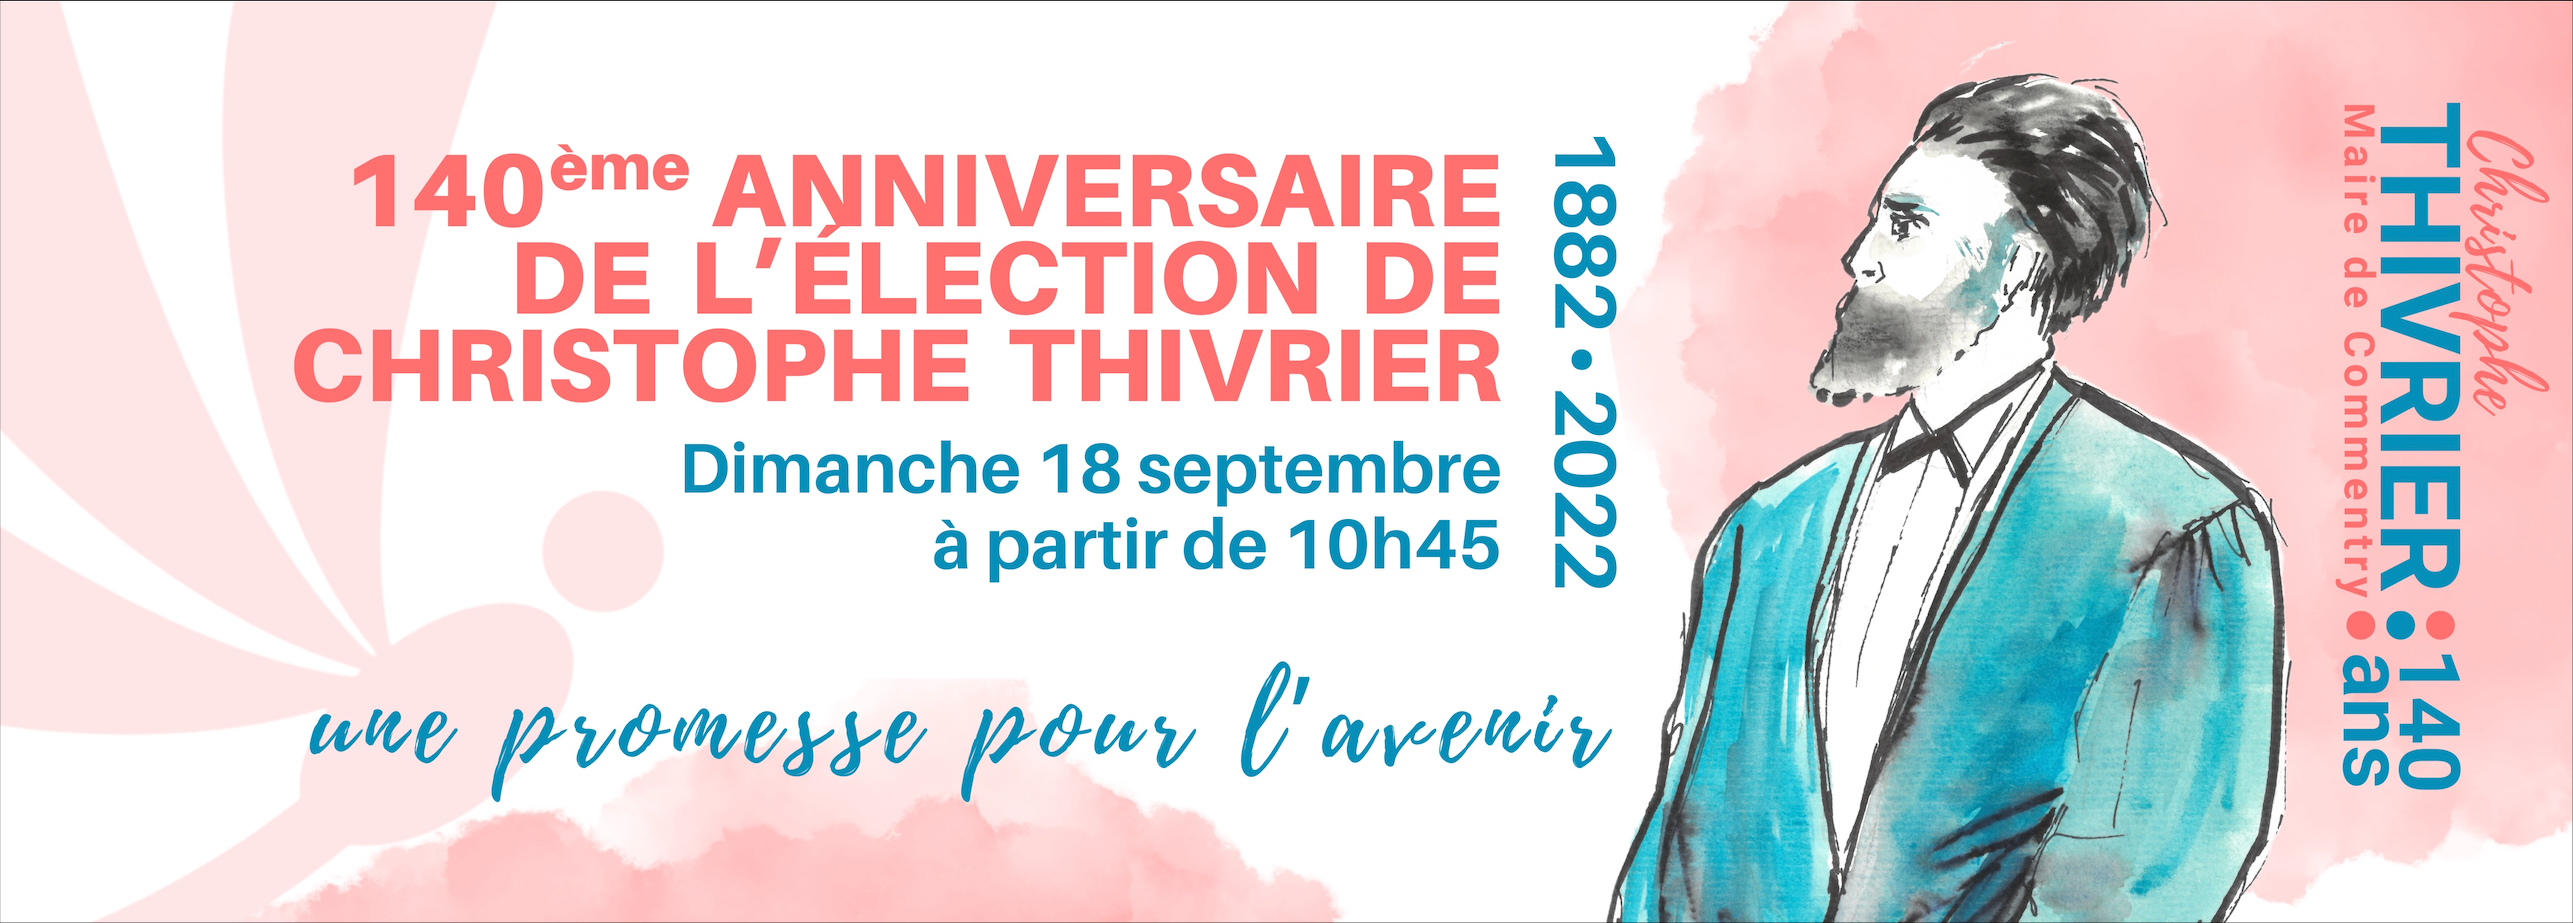 140ème anniversaire de l'élection de Christophe Thivrier